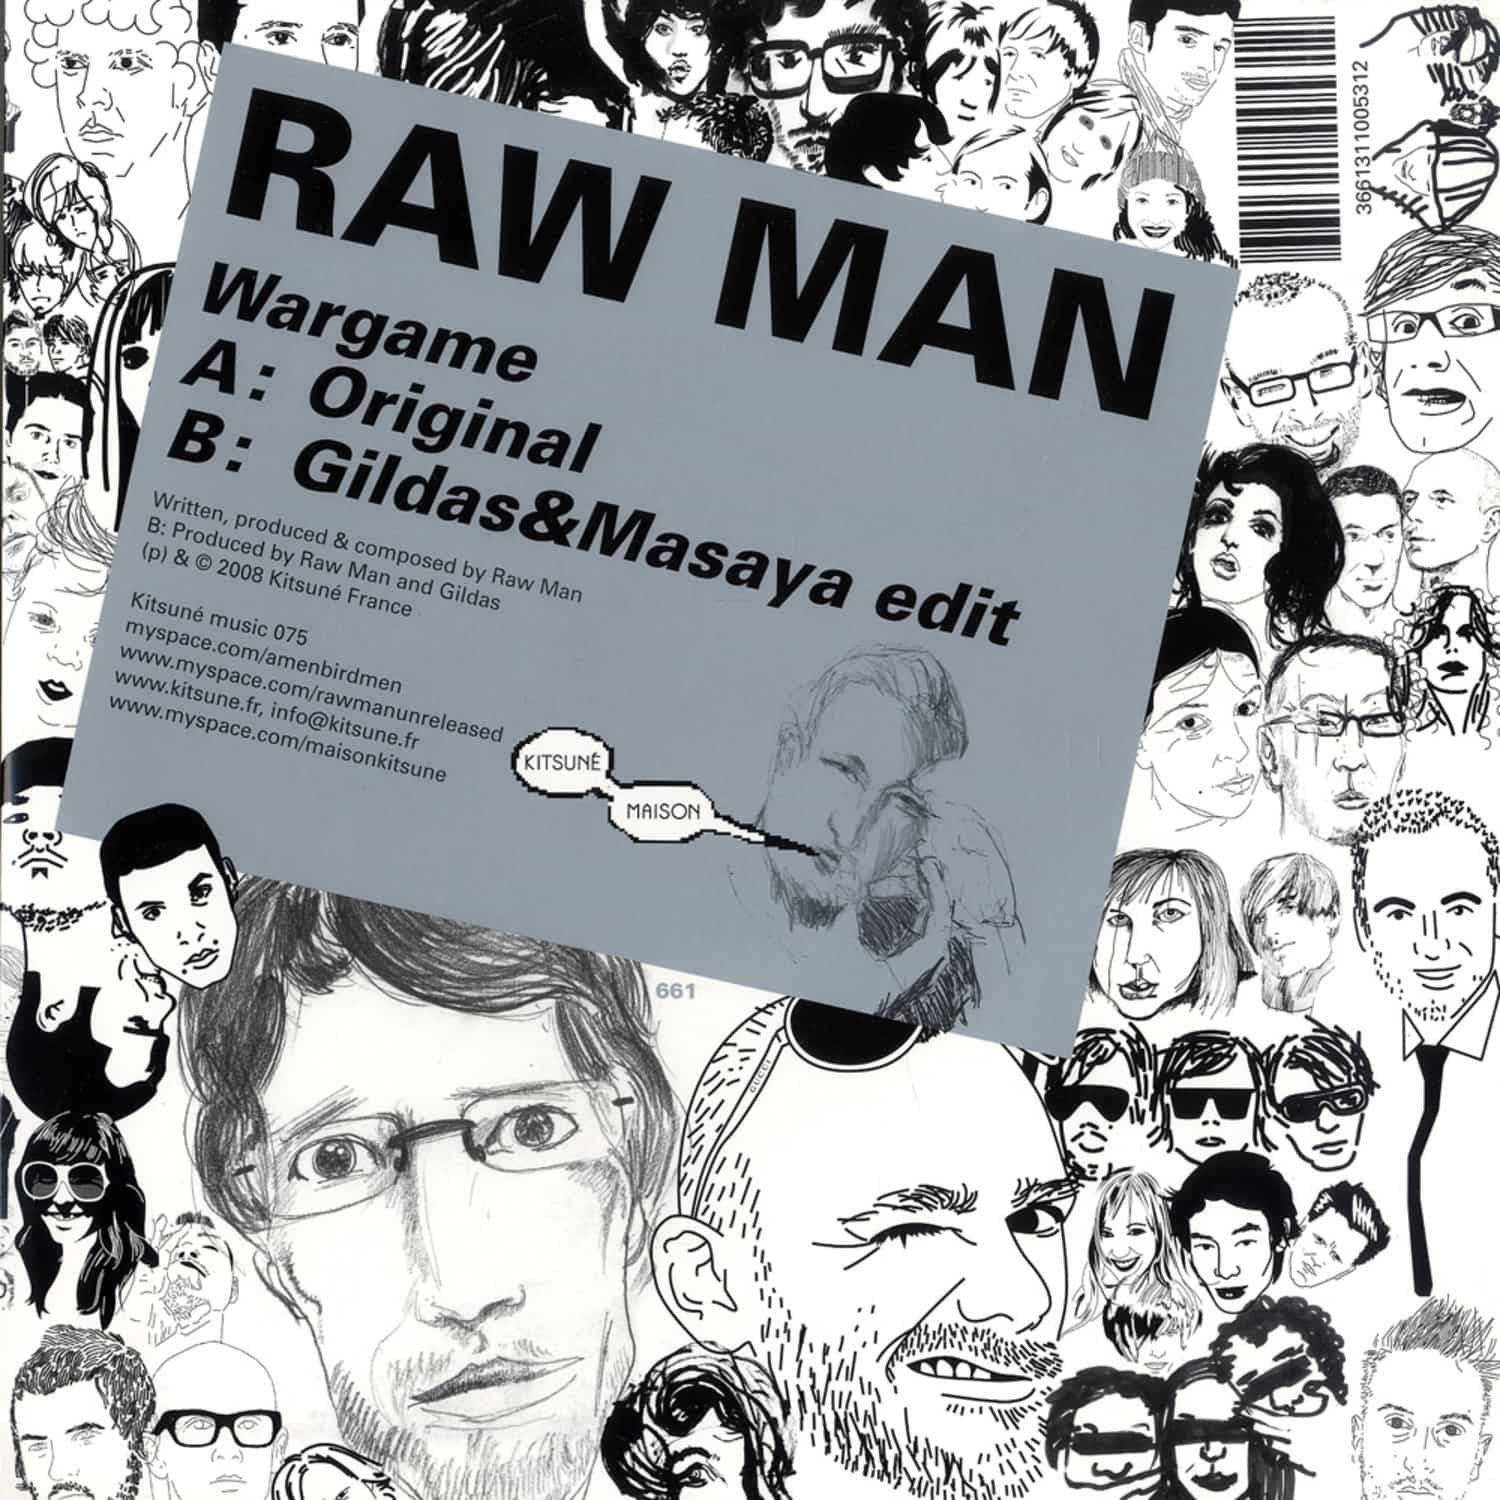 Raw Man - WARGAME